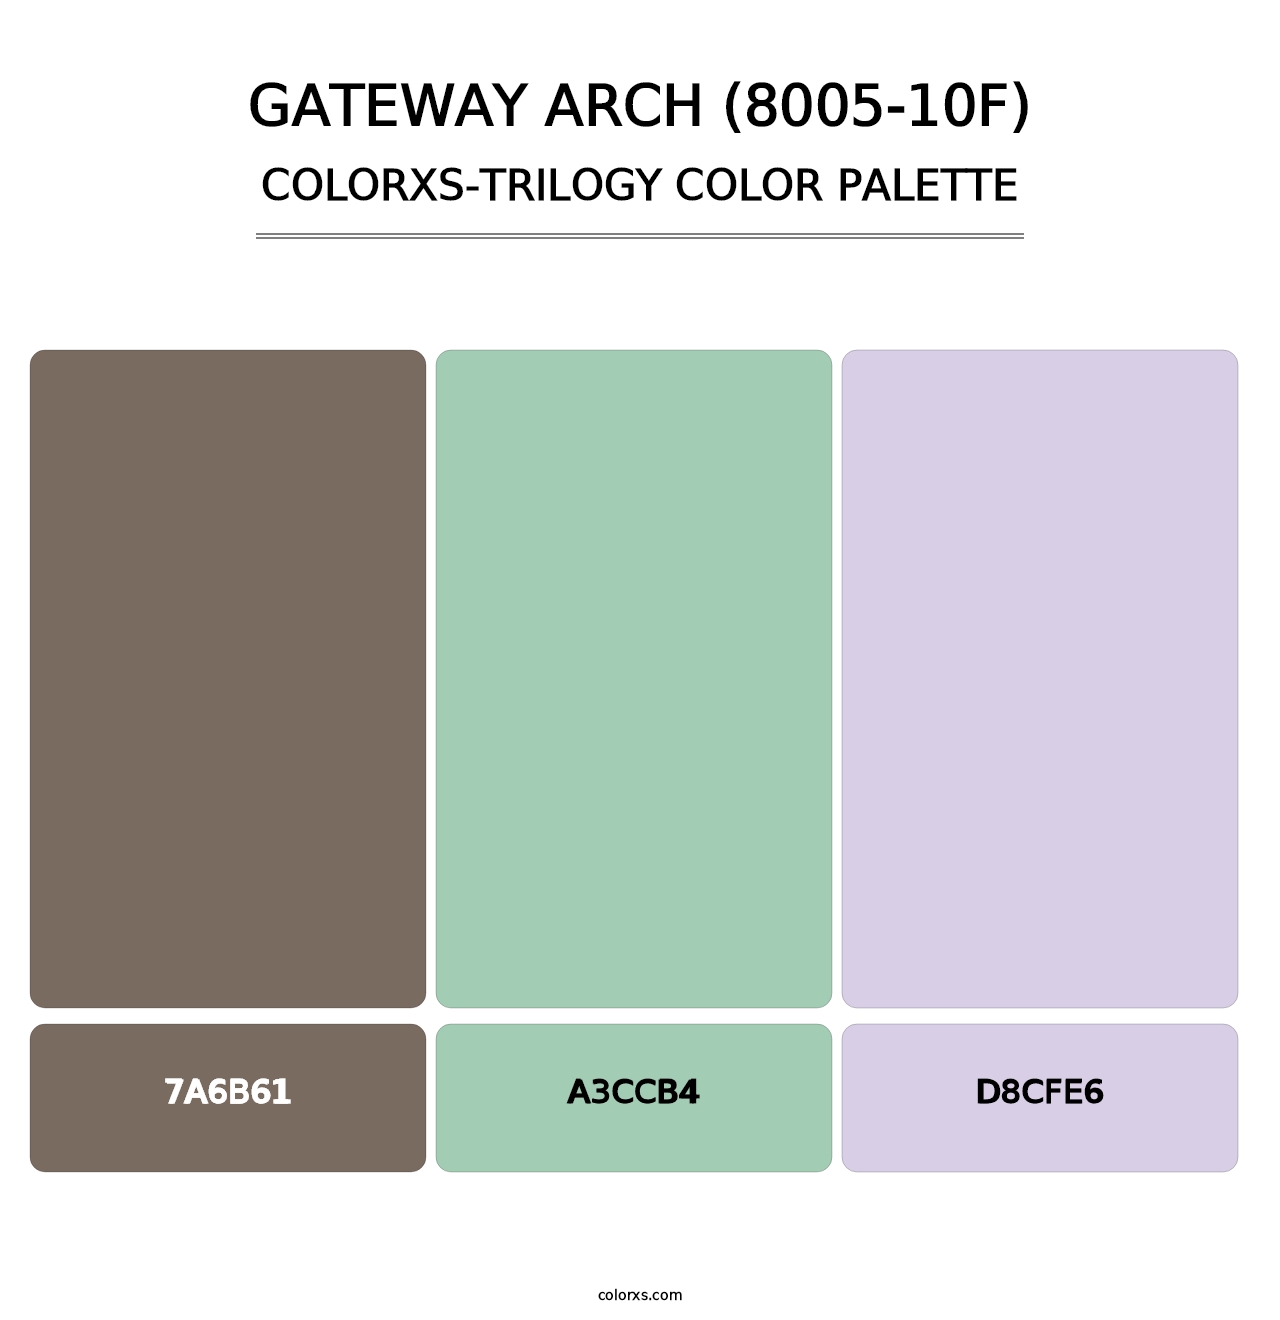 Gateway Arch (8005-10F) - Colorxs Trilogy Palette